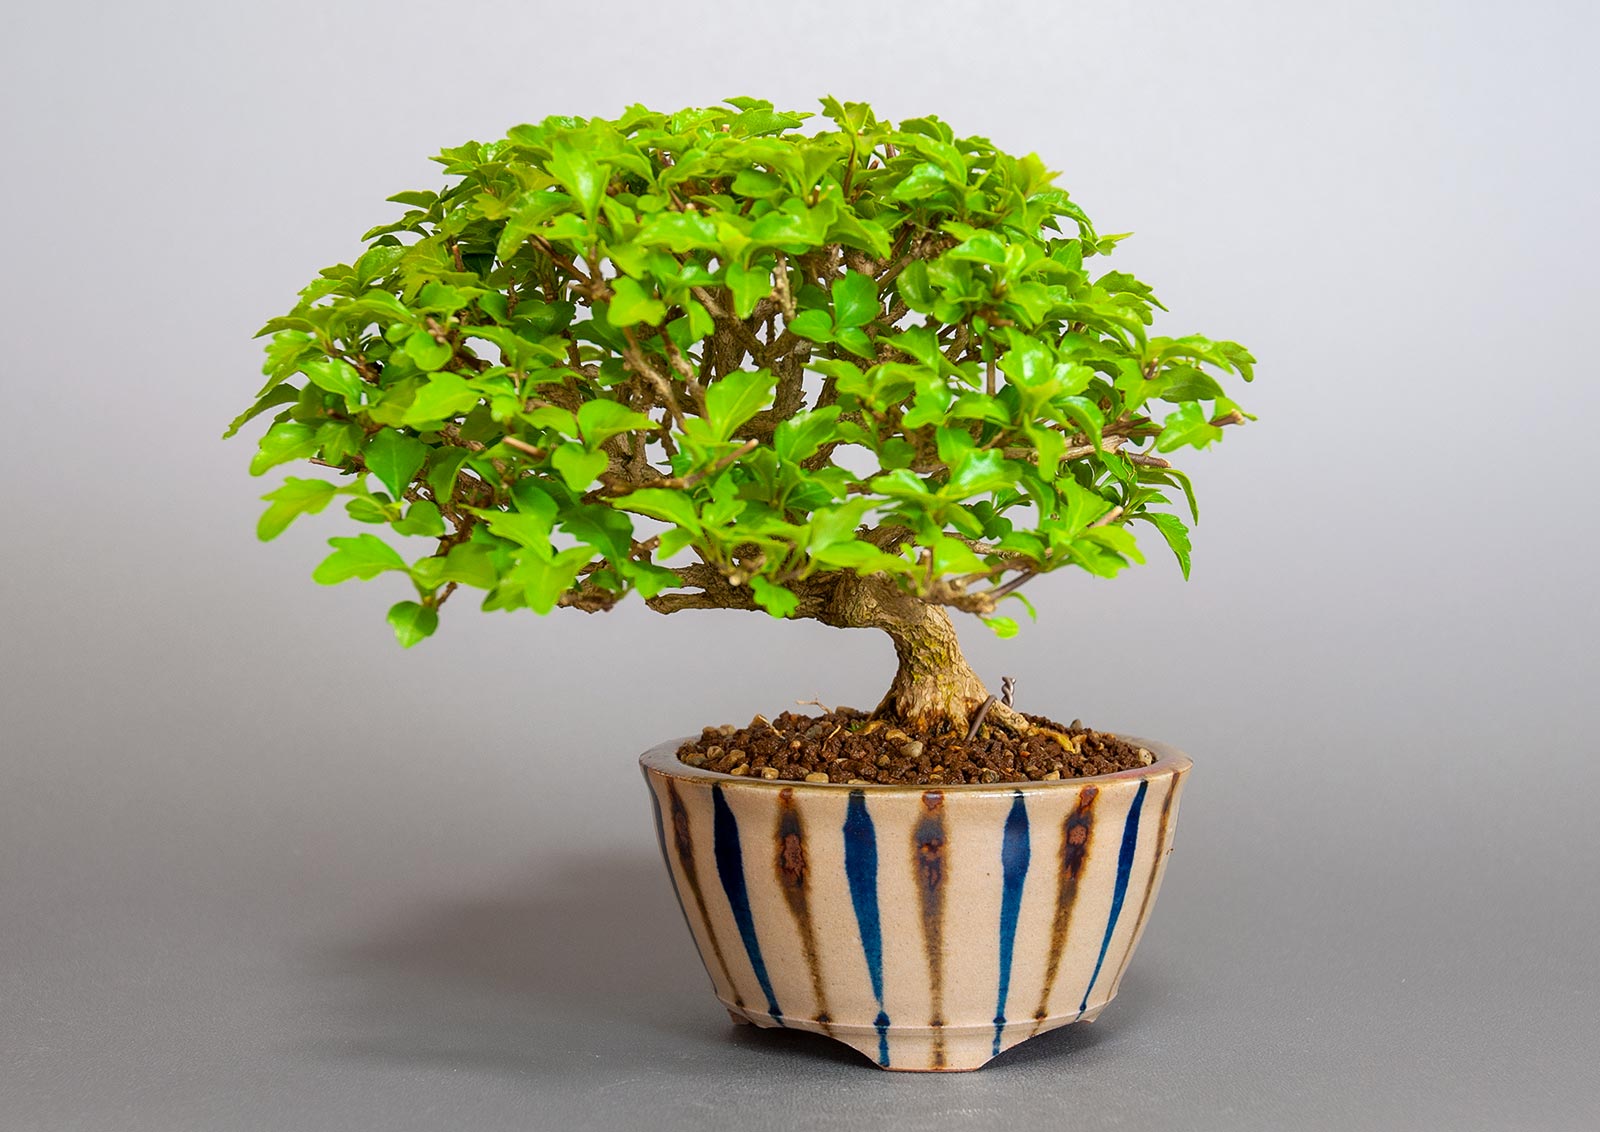 ニオイカエデ-O2（においかえで・匂い楓）雑木盆栽の販売と育て方・作り方・Premna japonica bonsai